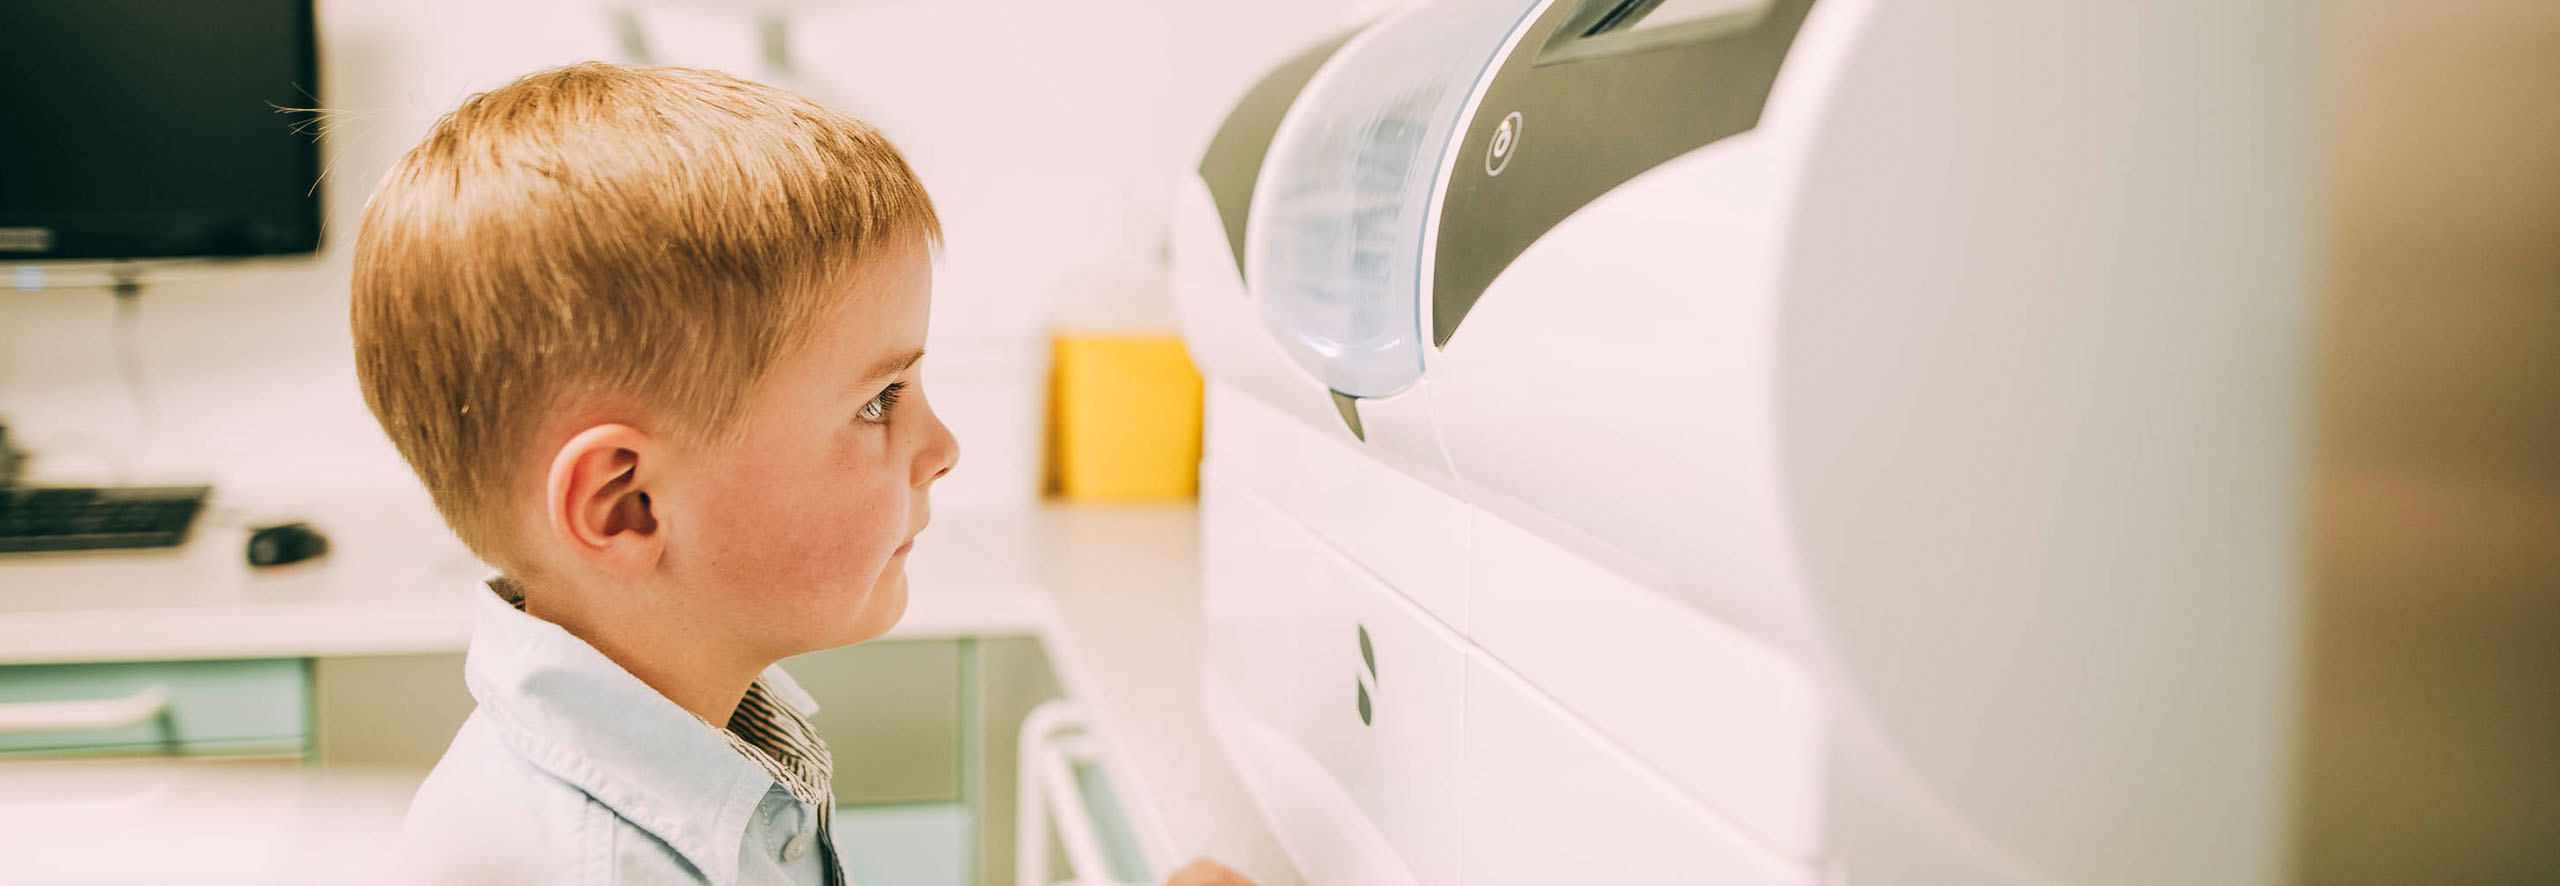 Ein Junge , etwa 8 Jahre alt, blickt in die Cerec-Maschine und ist fasziniert vom präzisen Fräsen der Cerec-Maschine.